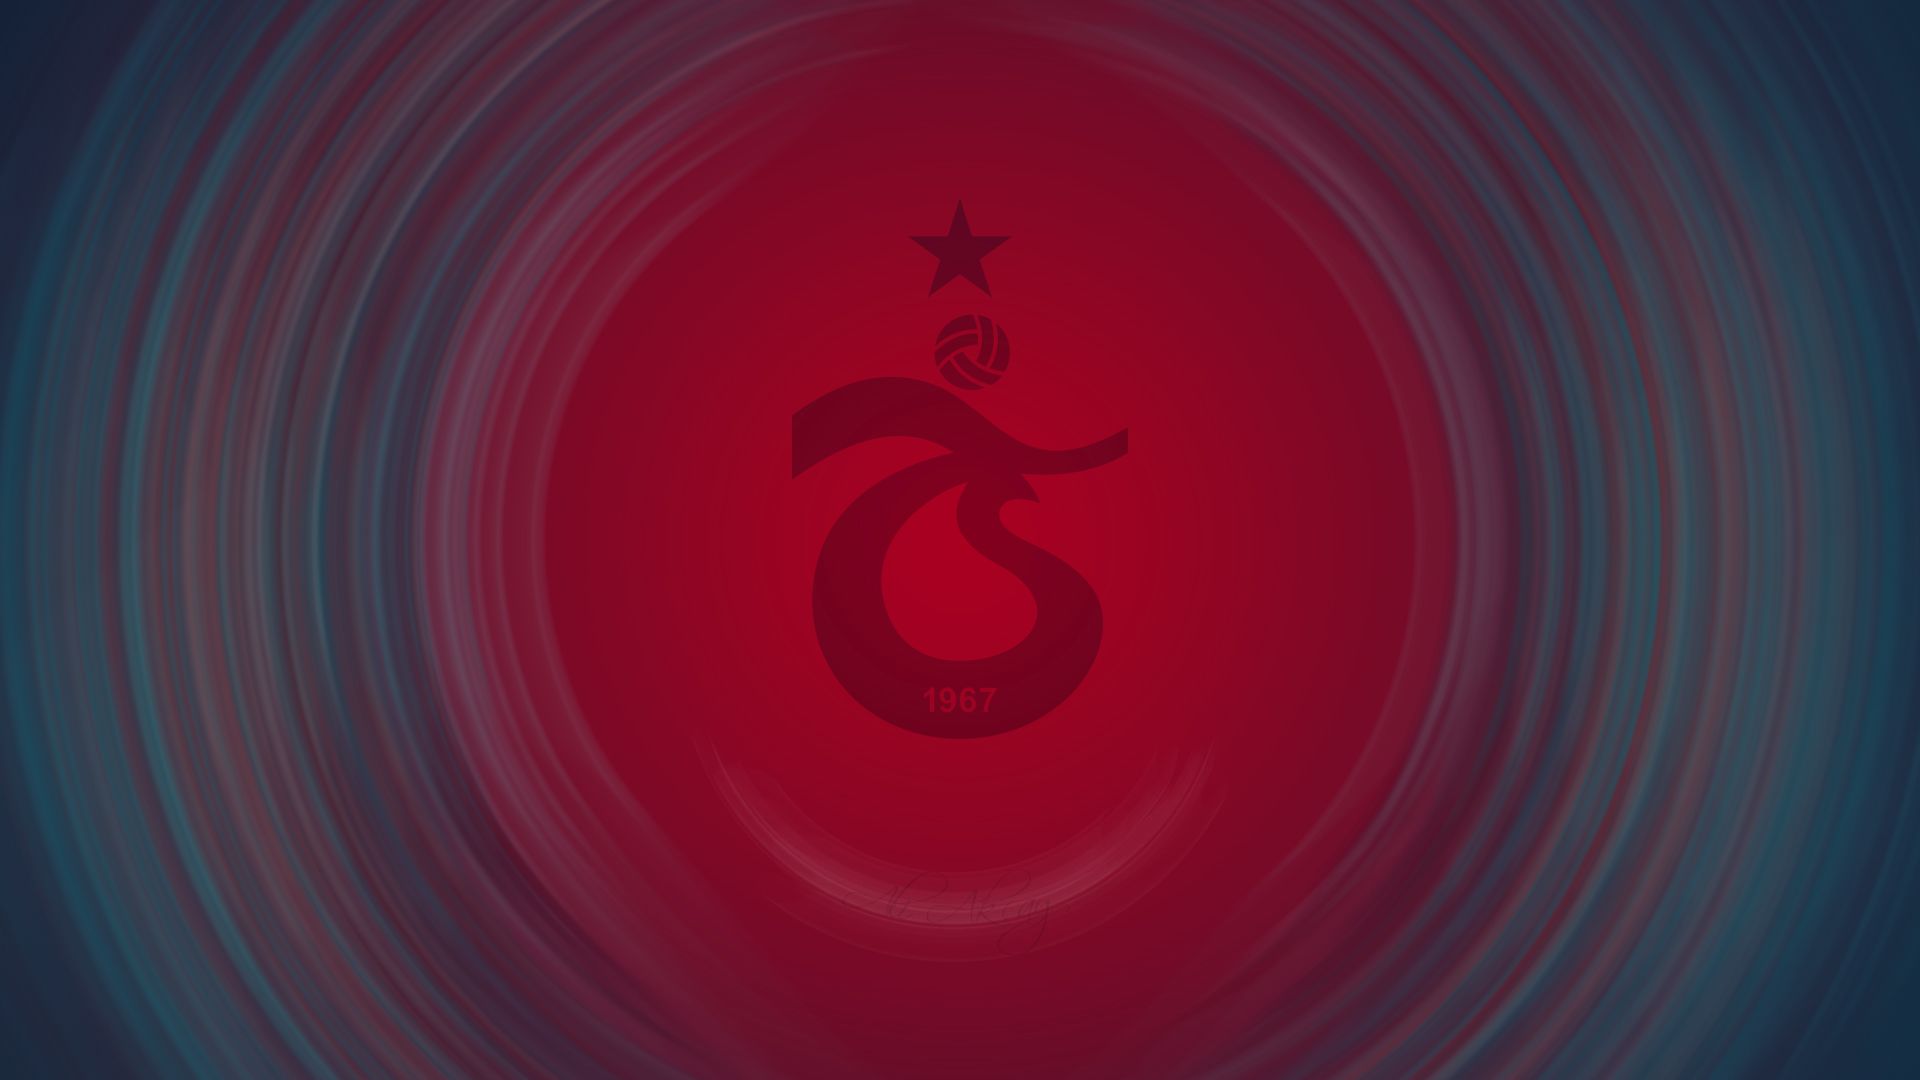 Free download wallpaper Sports, Logo, Emblem, Soccer, Trabzonspor on your PC desktop